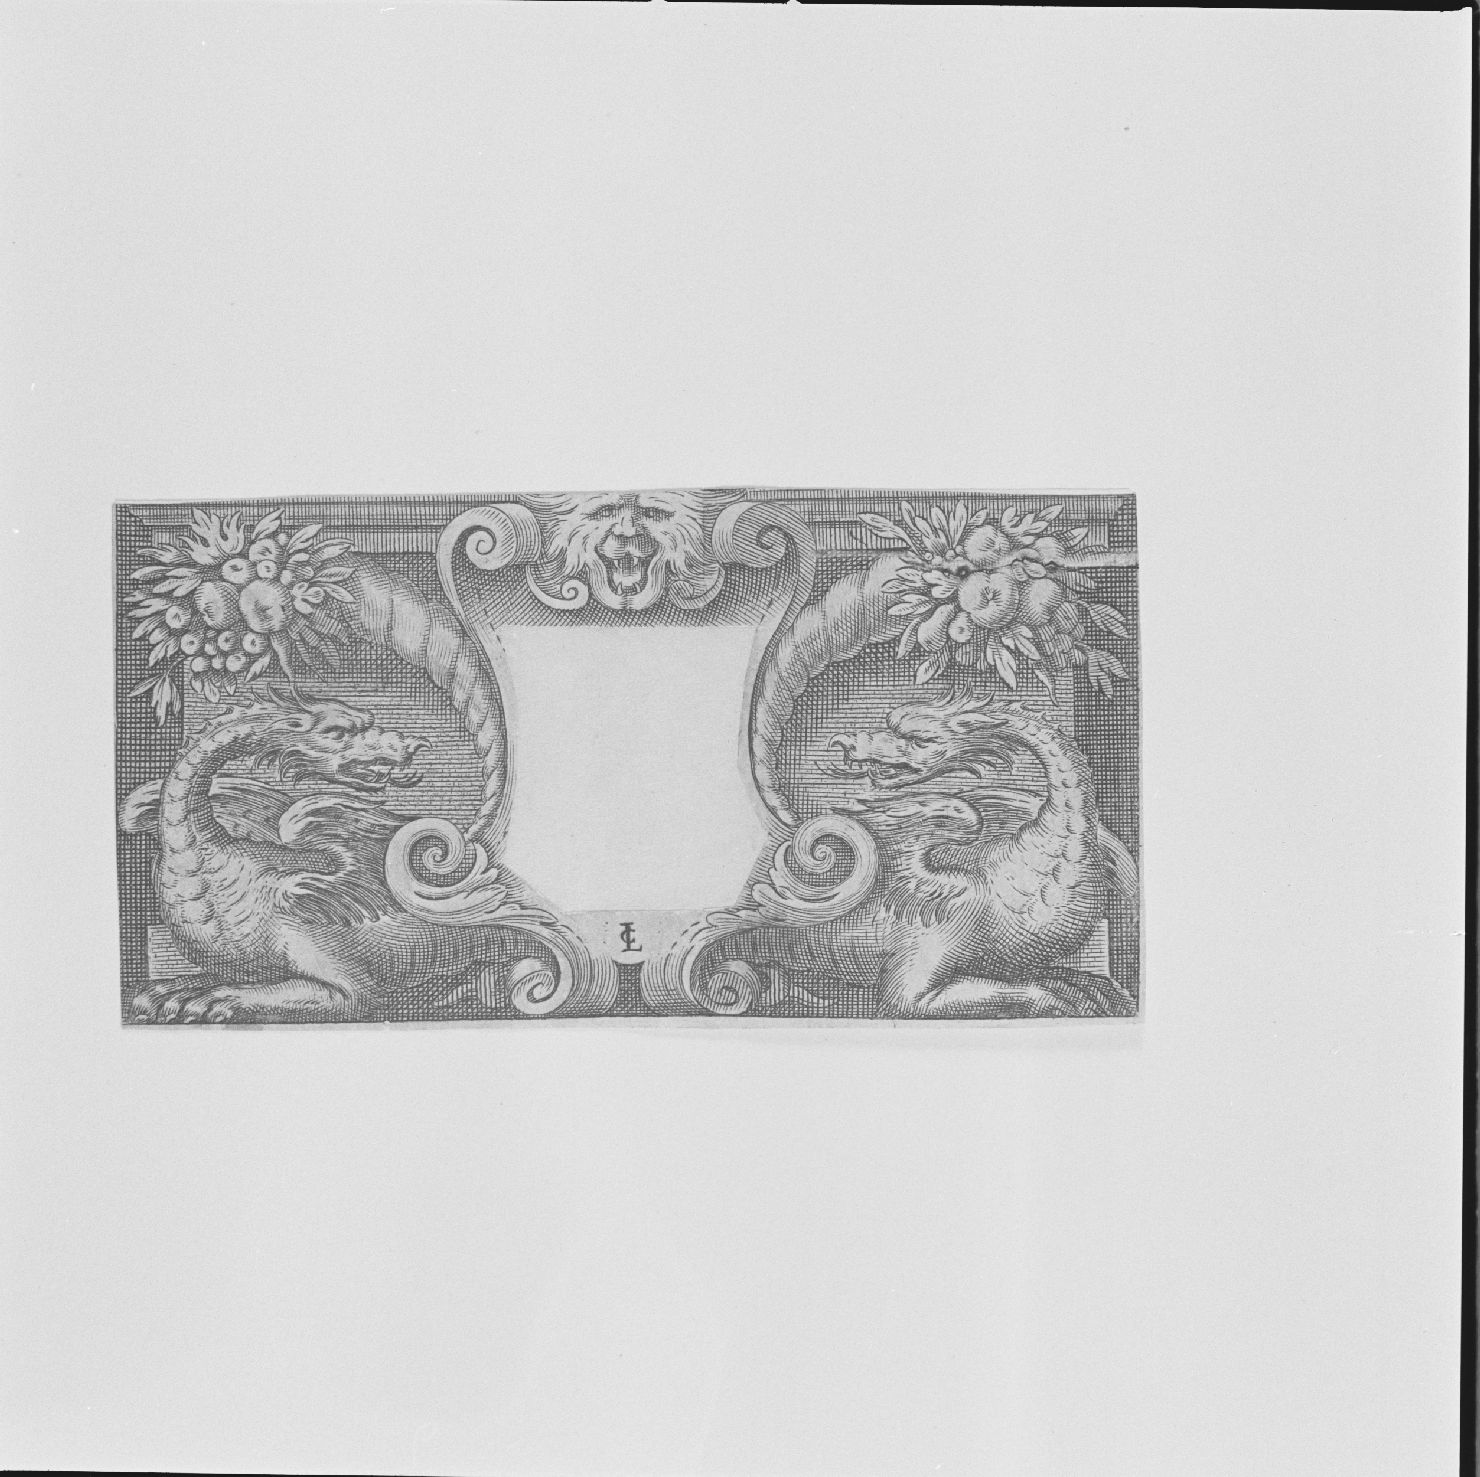 motivi decorativi con grifi e cornucopie (stampa) di Ciamberlano Luca (prima metà sec. XVII)